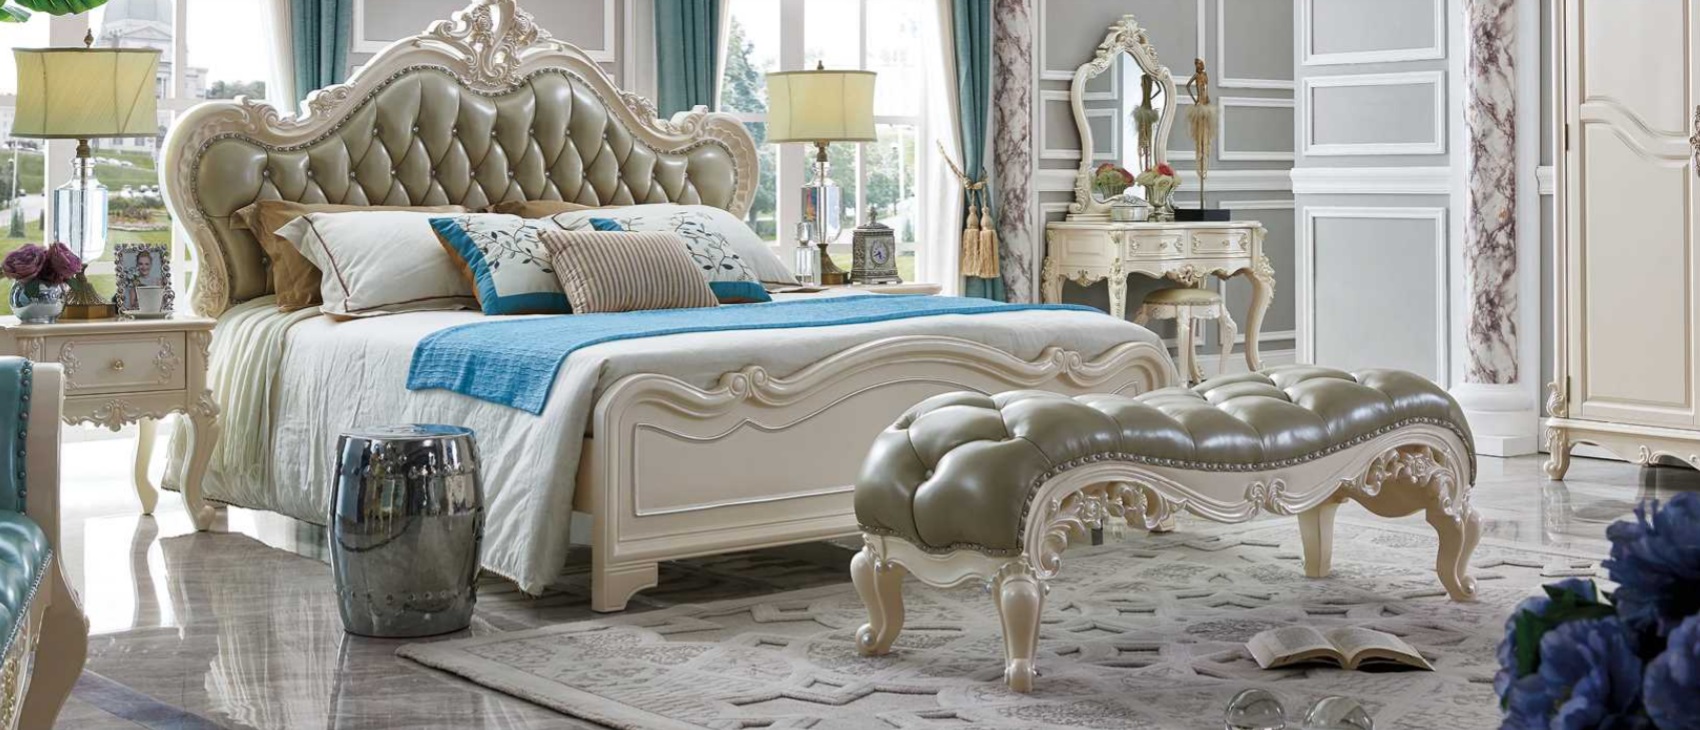 Klassisches Bett Luxus Chesterfield Leder Hotel Schlafzimmer Barock Möbel Betten